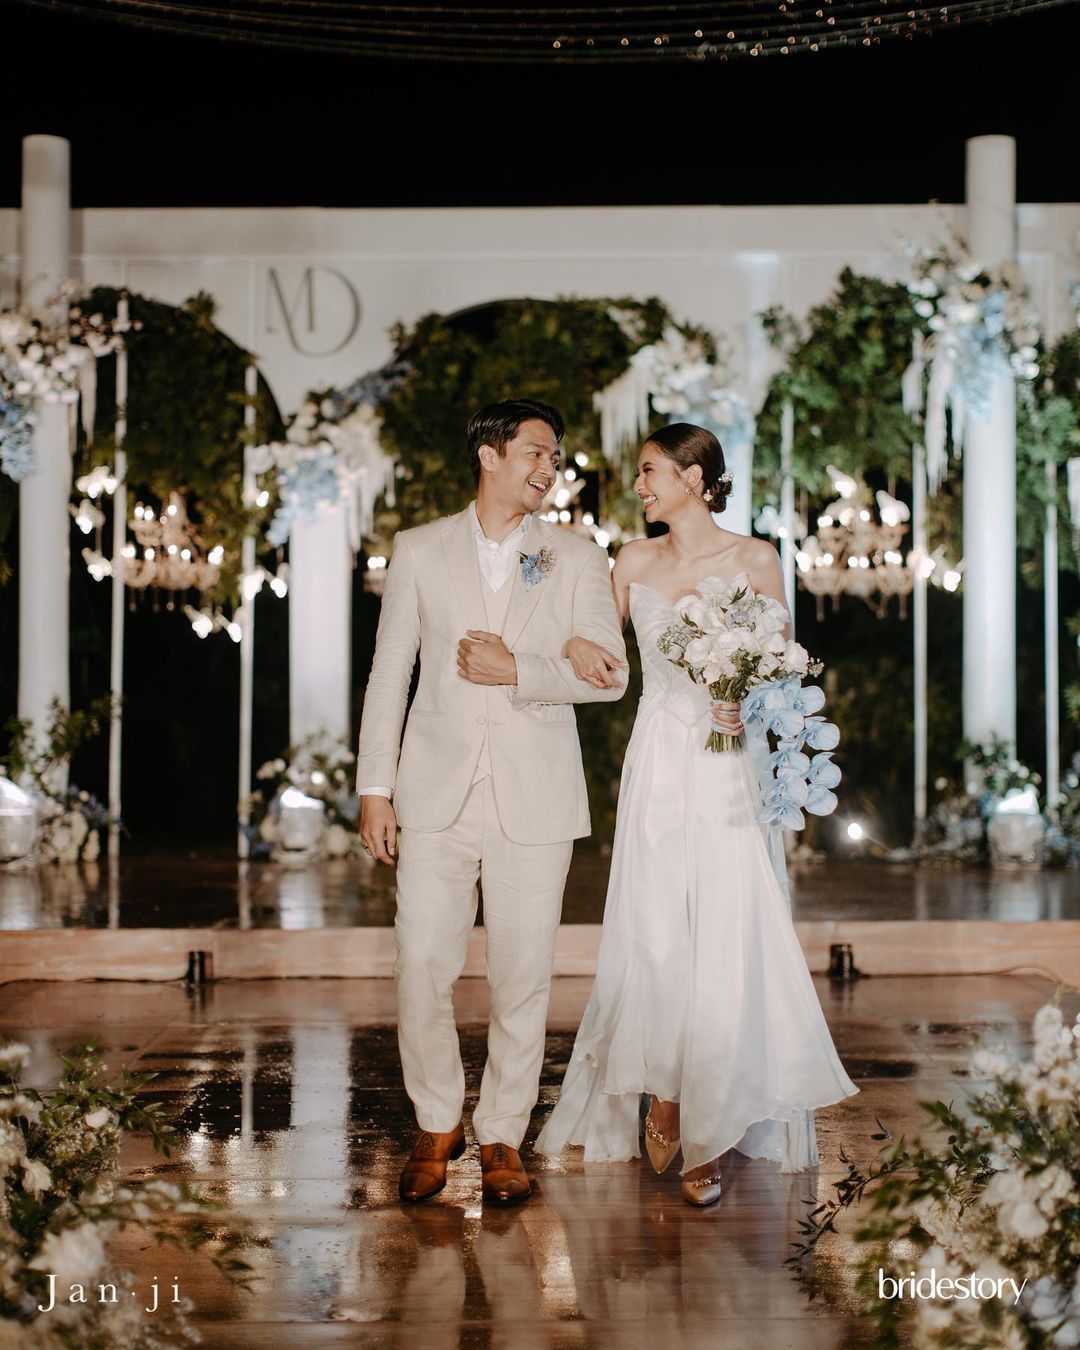 Mikha Tambayong dan Deva Mahenra menikah di The Ritz-Carlton, Nusa Dua, Bali/foto: instagram.com/miktambayong